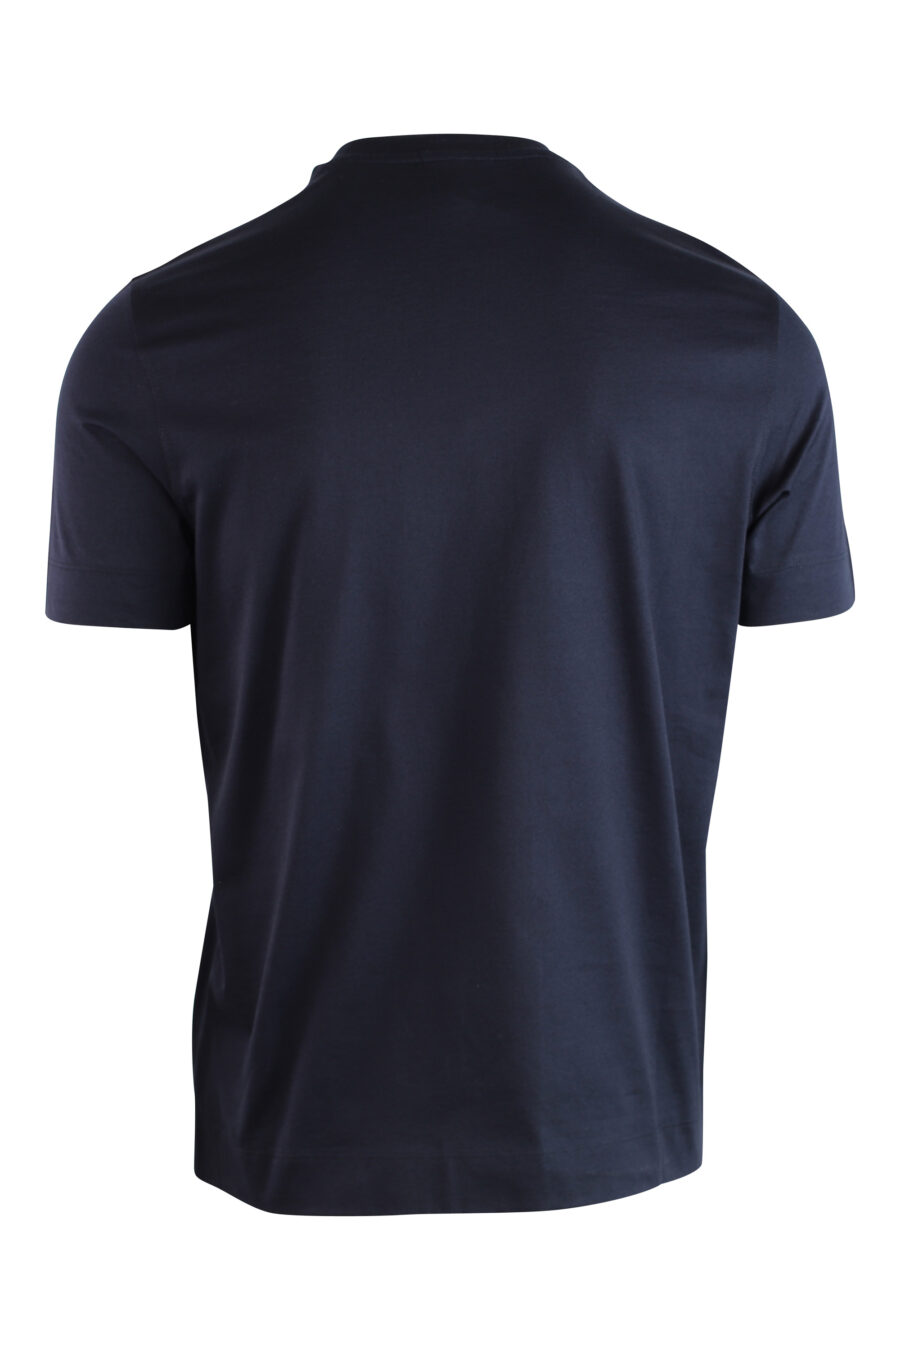 Camiseta azul oscura con maxilogo águila redondo - IMG 3735